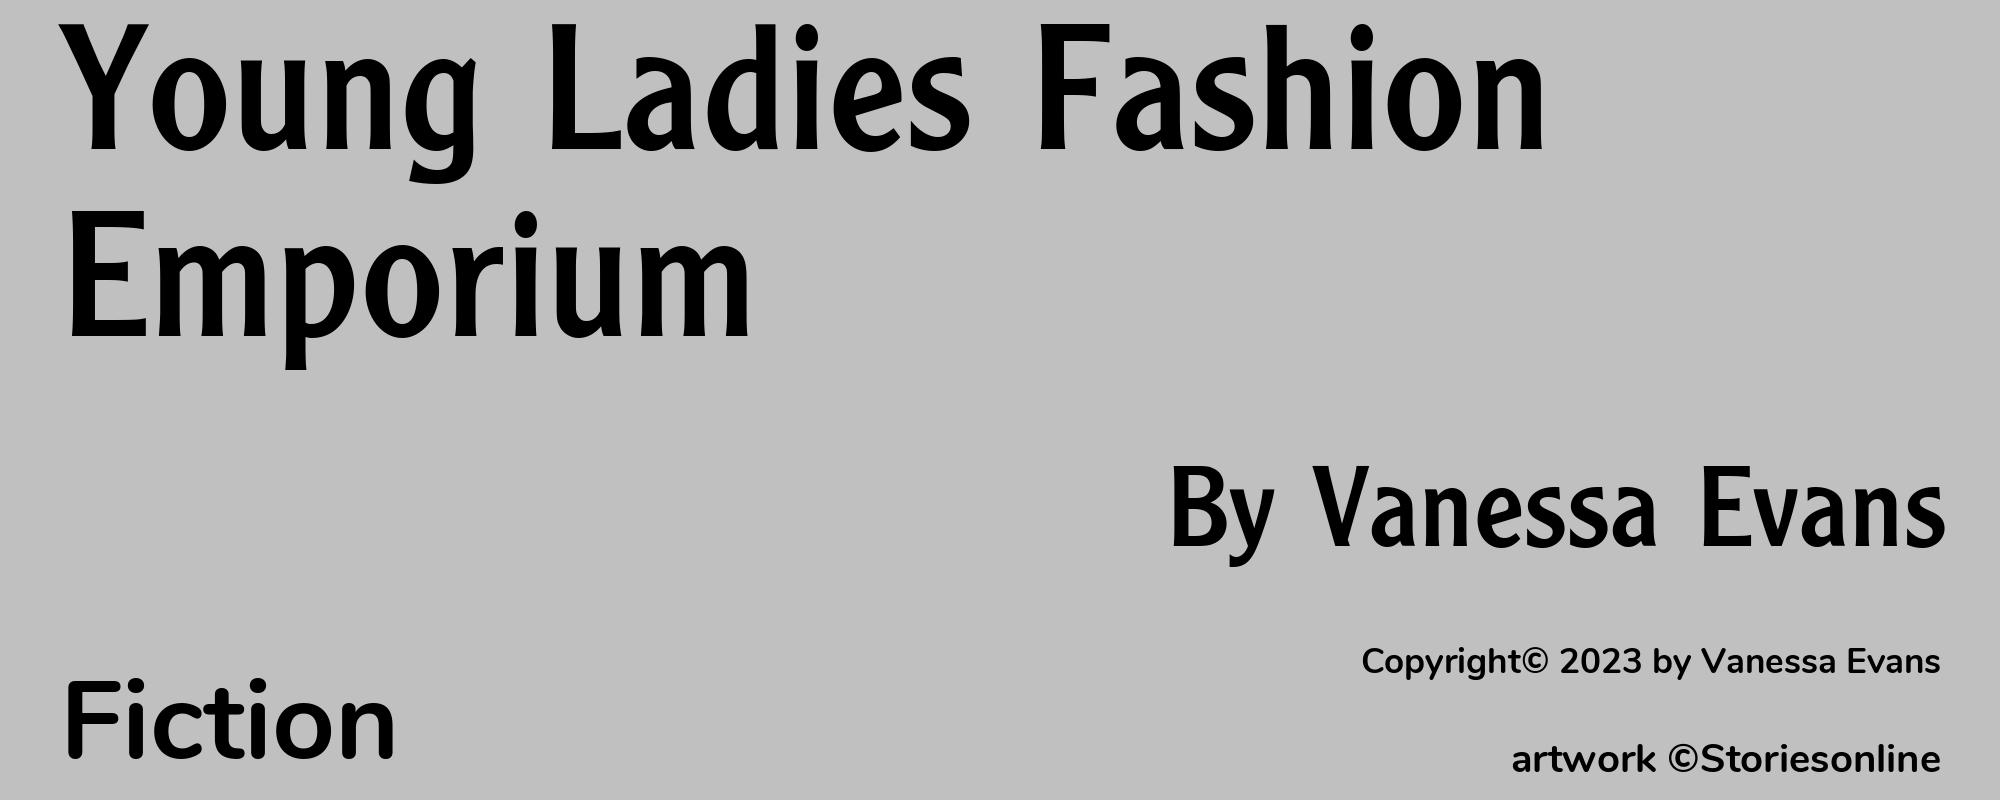 Young Ladies Fashion Emporium - Cover